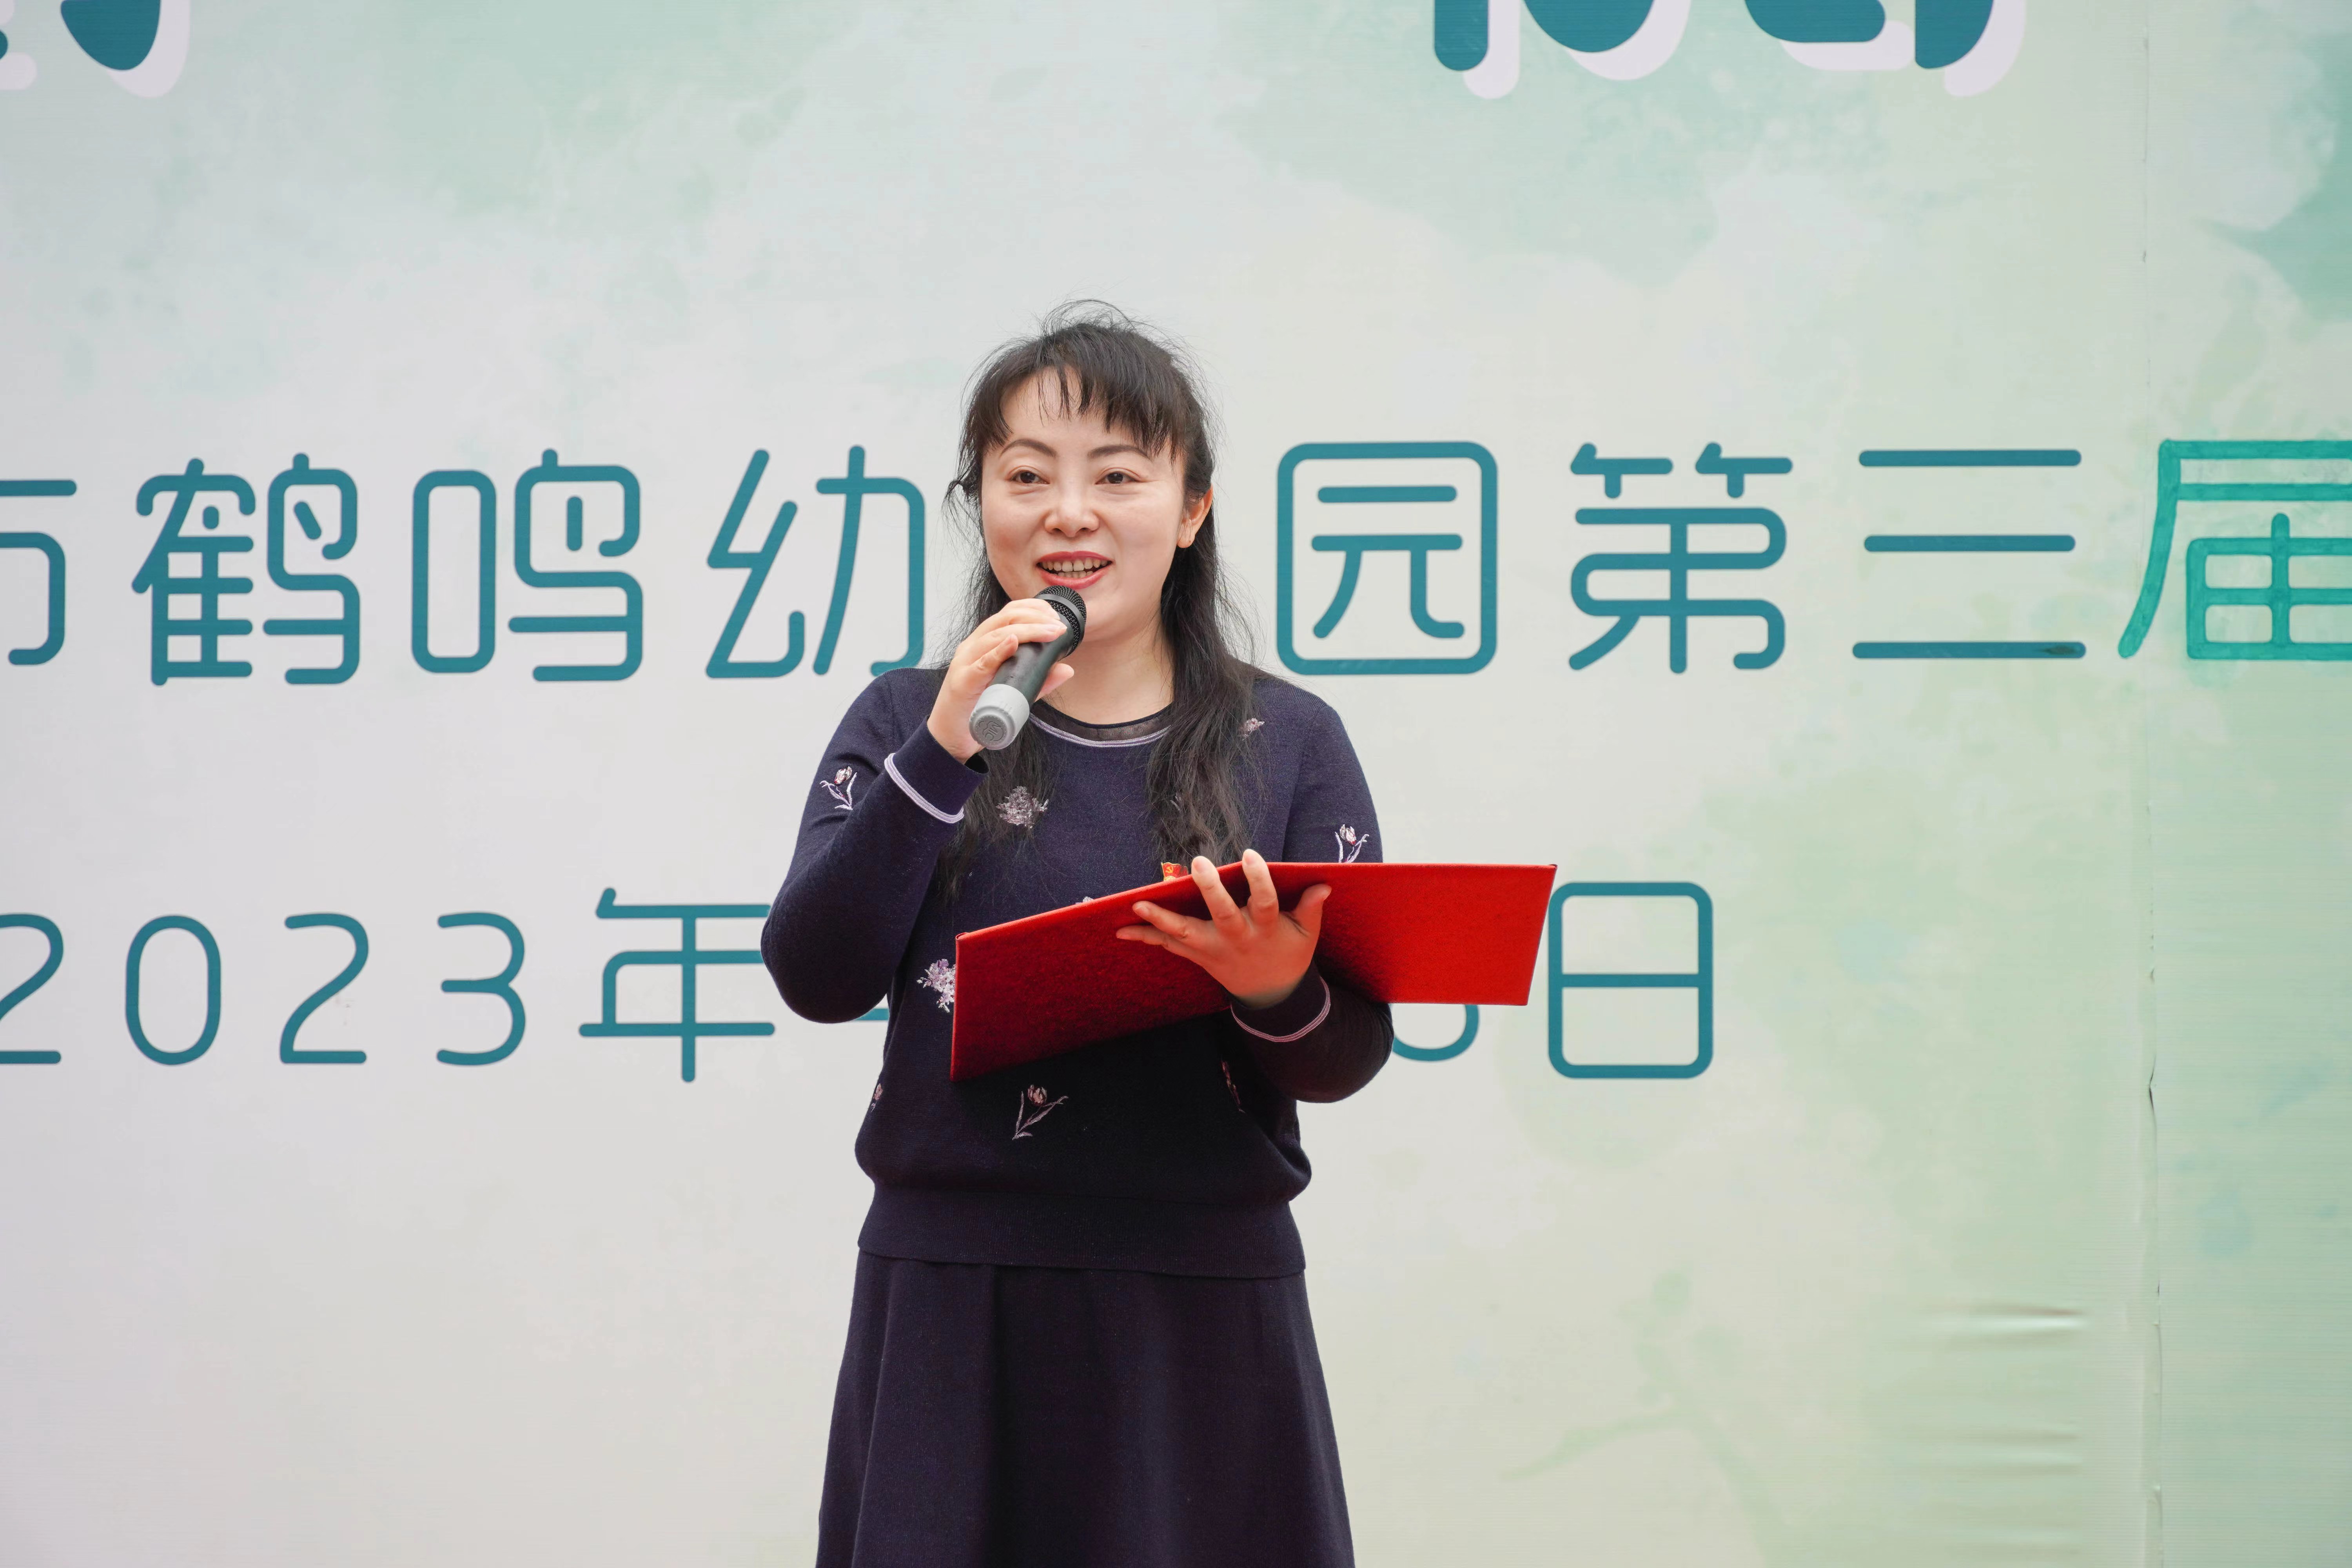 南京市鹤鸣幼儿园:阅读点亮孩子们人生路